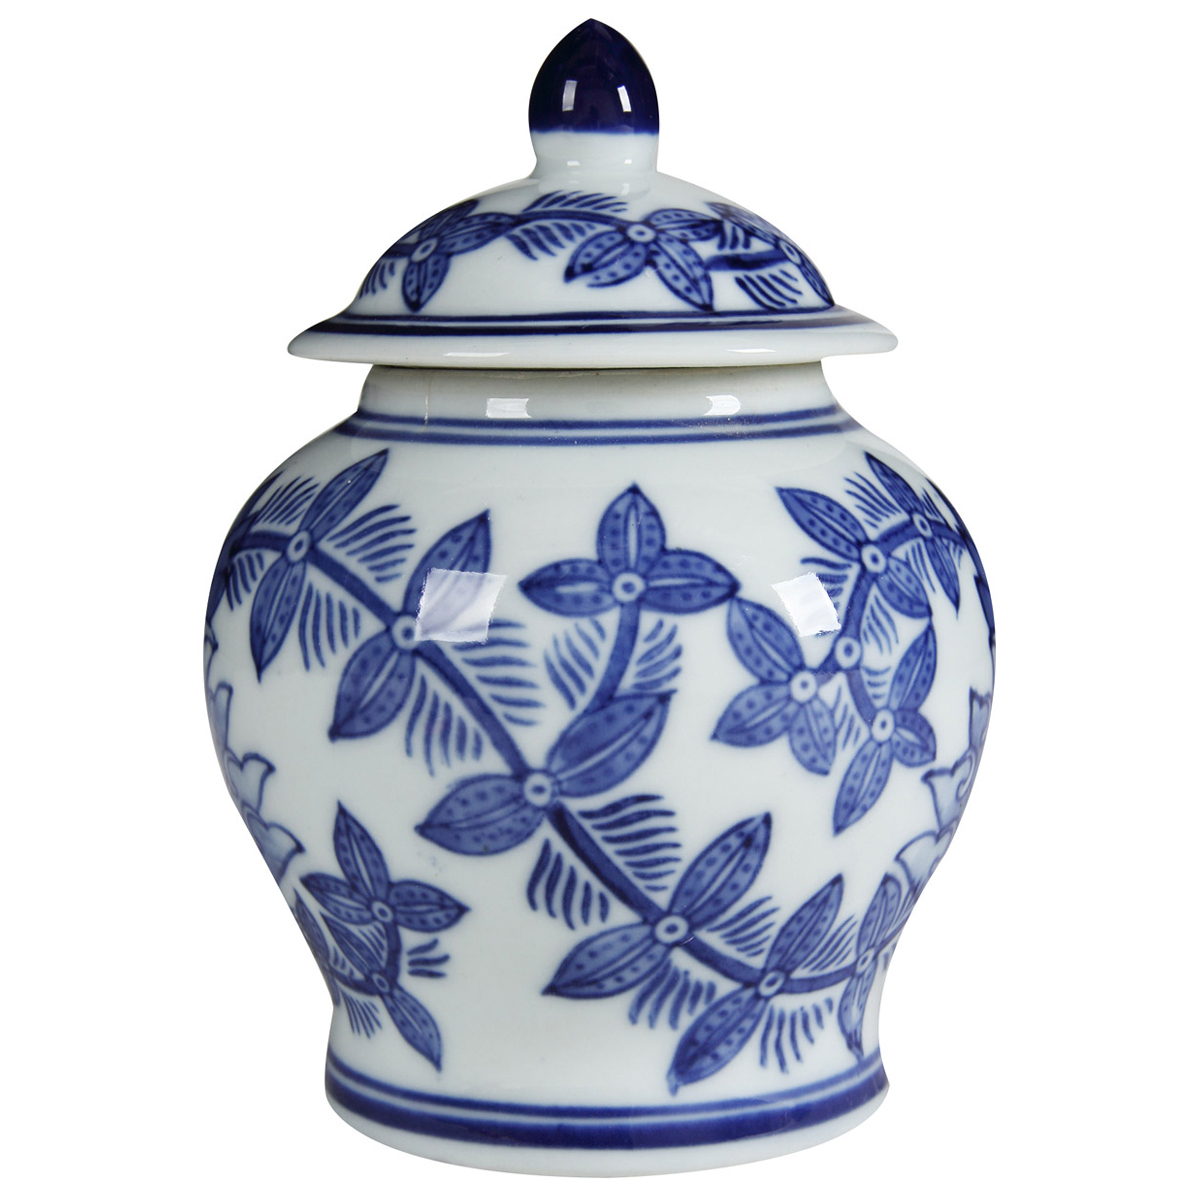 6 Inch Porcelain Jar, Urn Shape, Lid, Floral Design, Blue, White- Saltoro Sherpi